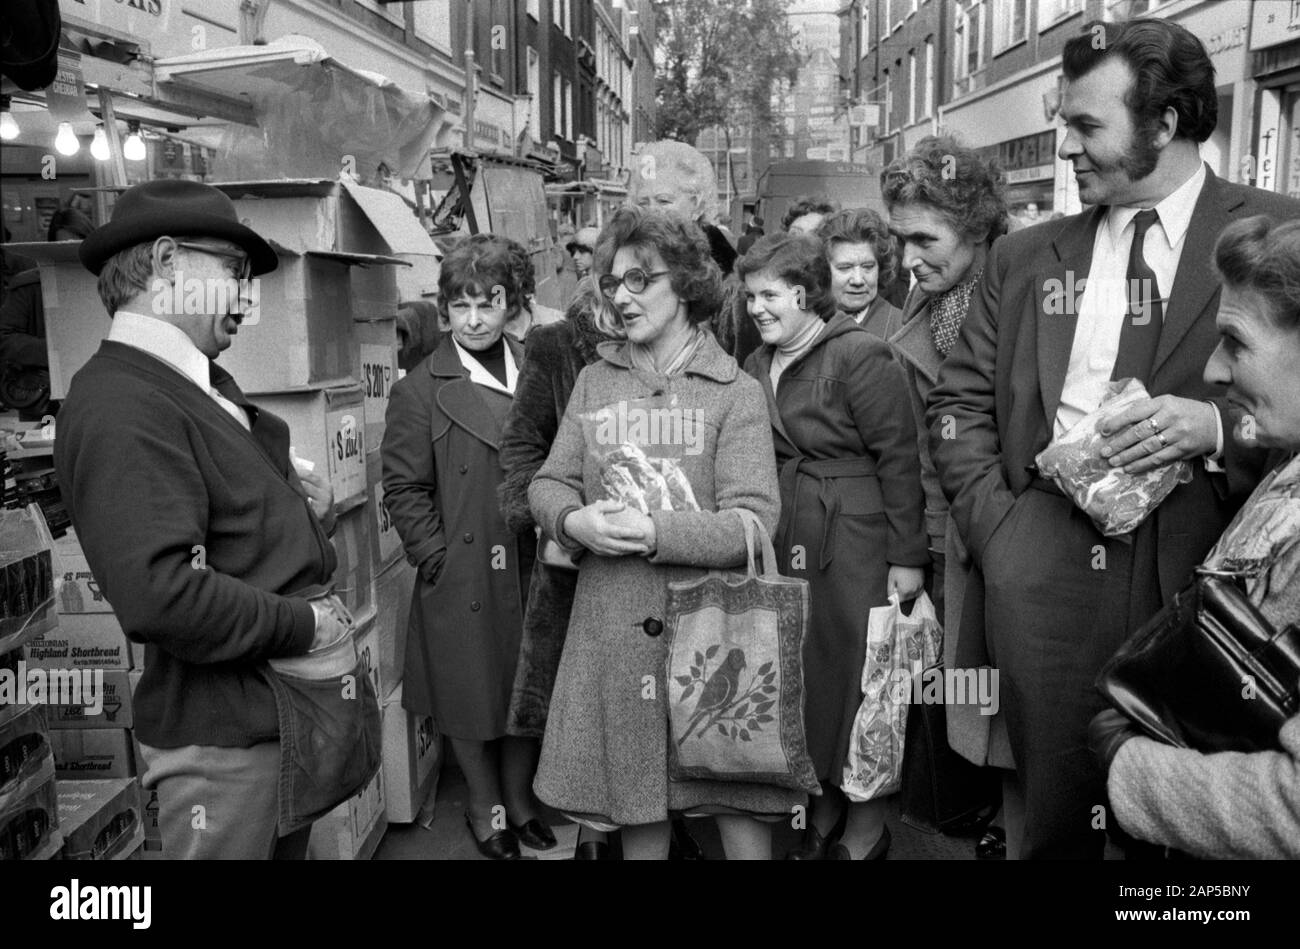 Strutton Ground Street Market, Victoria London 1970er. Markthändler, der seine Waren verkauft, zieht eine Menge an Mittagskäufern aus dem Jahr 1976 in Großbritannien HOMER SYKES ein Stockfoto